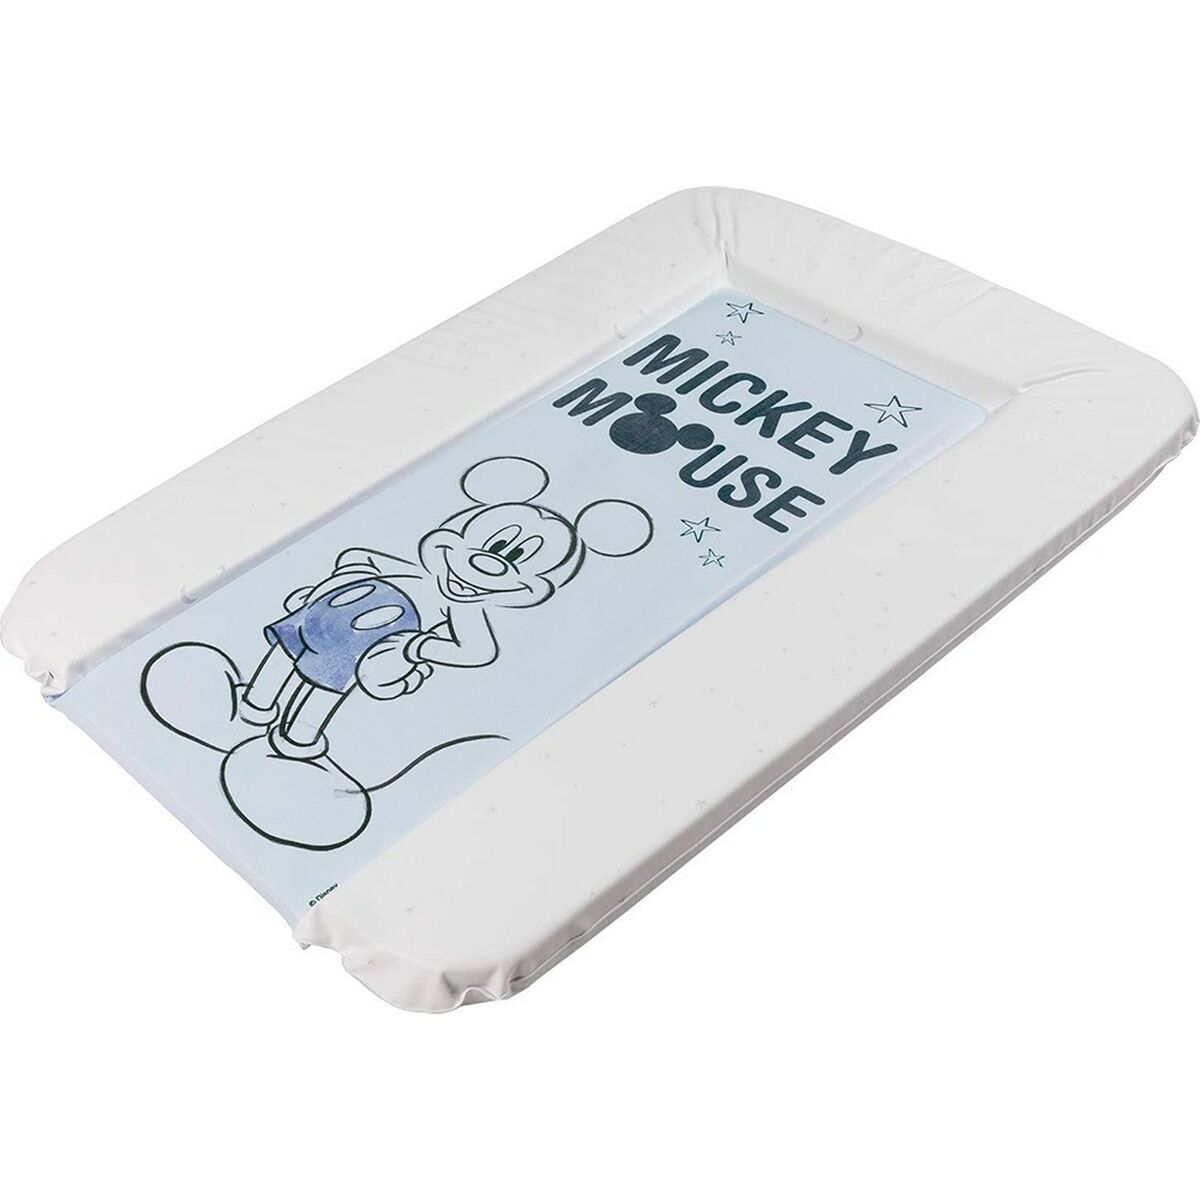 Vaihtaja Mickey Mouse CZ10341 Matkustus Sininen 73 x 48,5 x 3 cm